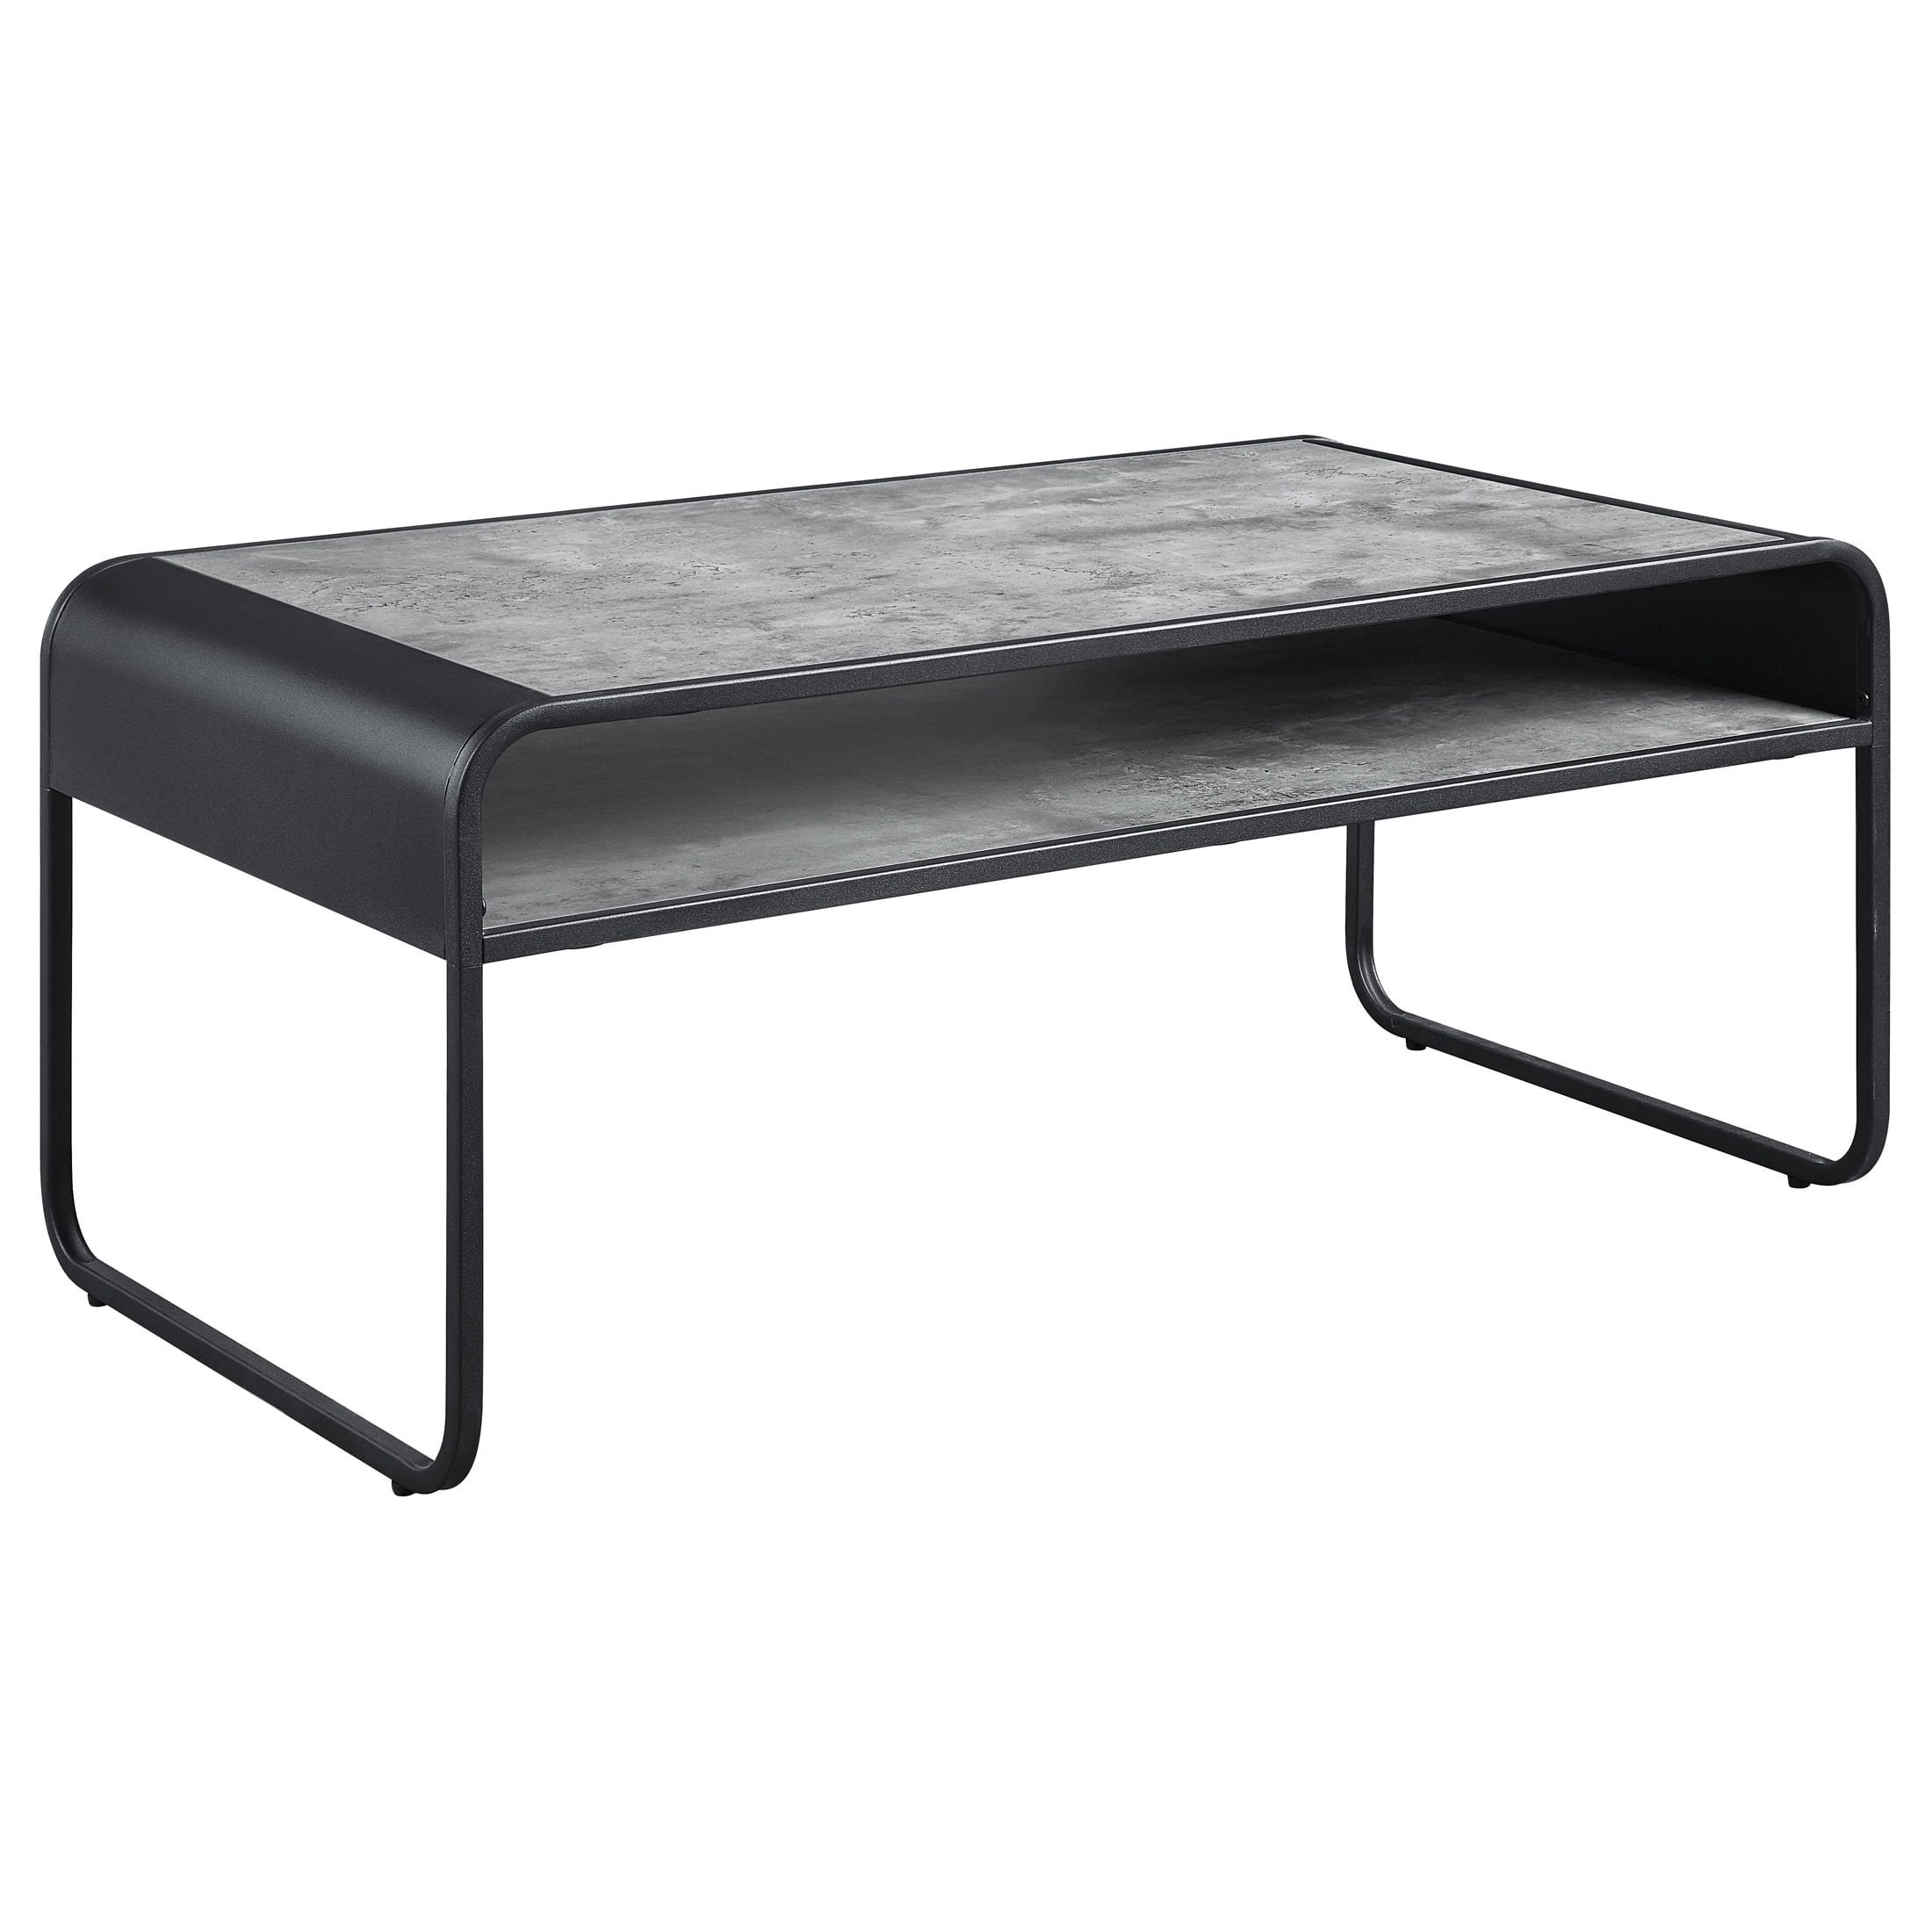 Picture of Acme Furniture LV01145 42 x 22 x 18 in. Raziela Coffee Table&#44; Concrete Gray & Black